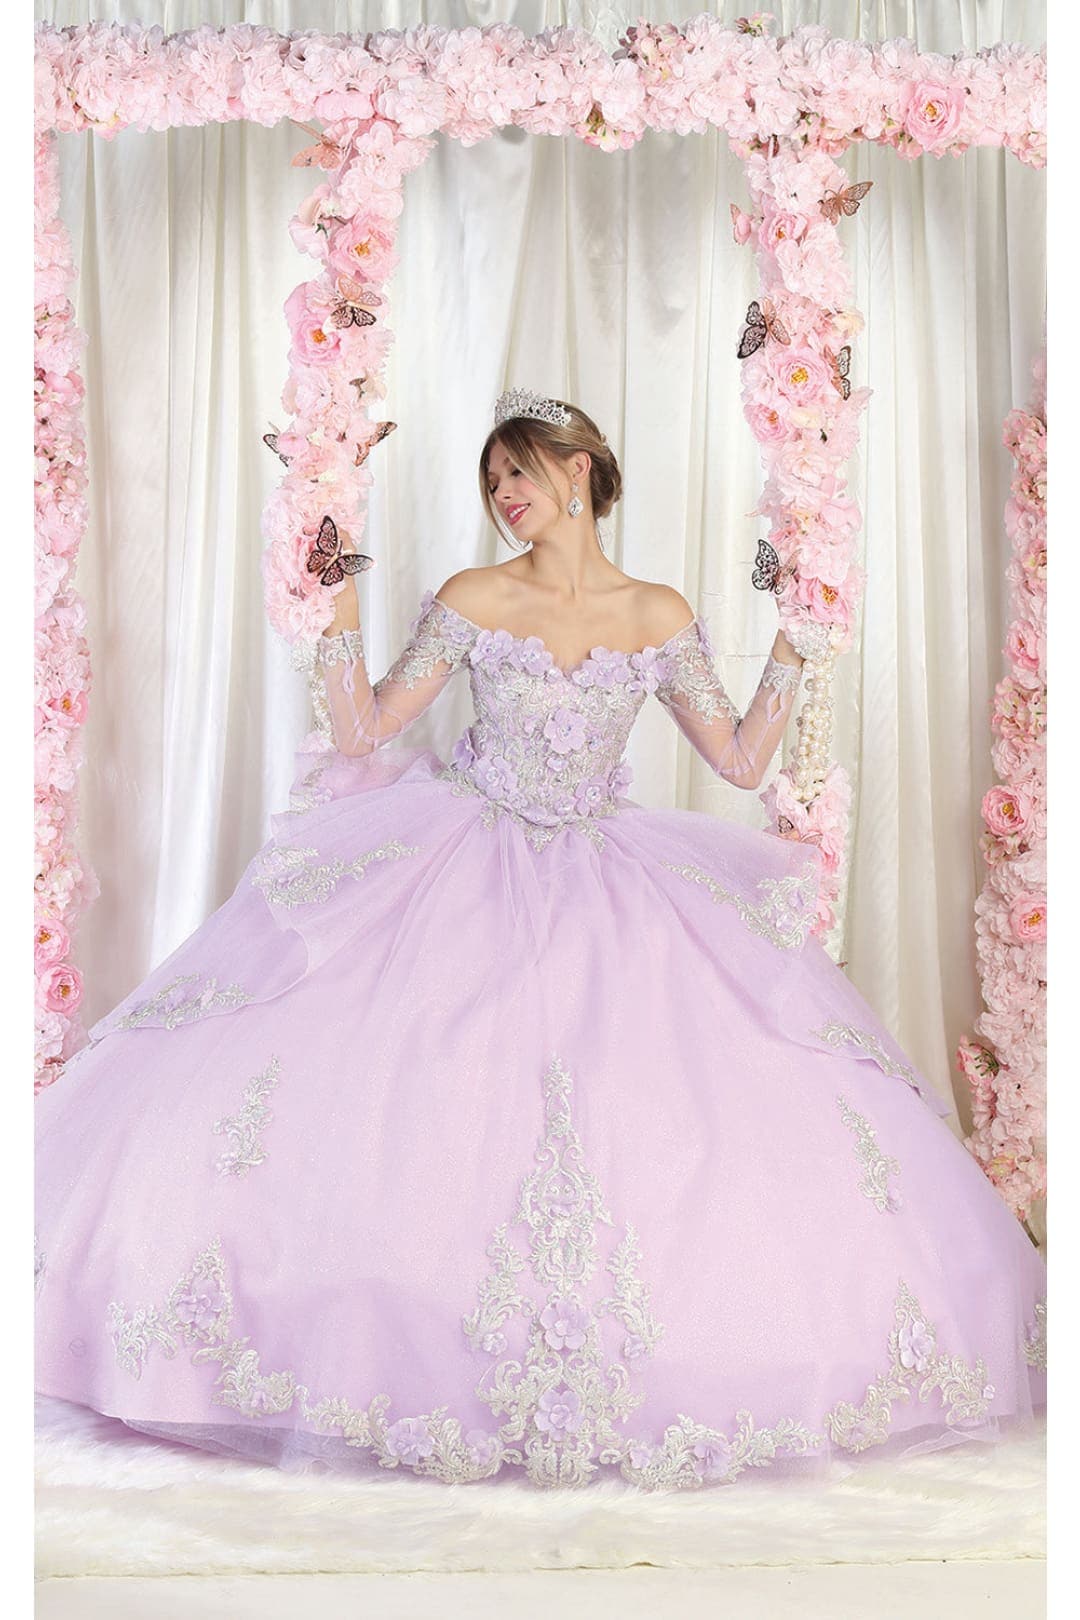 https://formaldressshops.com/cdn/shop/files/layla-k-lk189-off-shoulder-corset-quinceanera-ball-gown-lilac-4-10-12-14-16-18-dress-formaldressshops-468.jpg?v=1702162961&width=1200